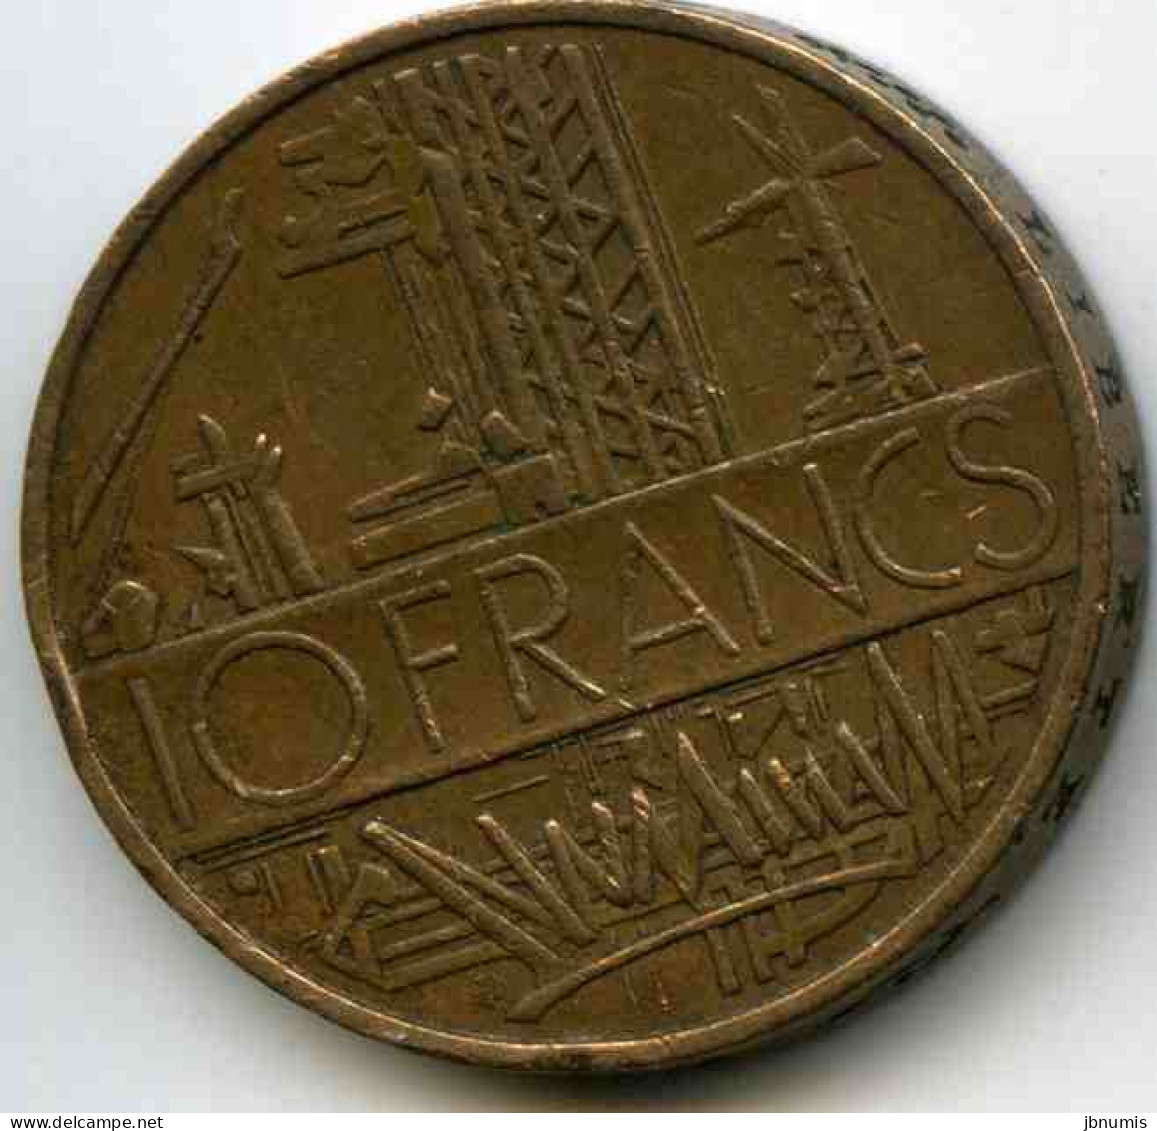 France 10 Francs 1976 Tranche A GAD 814 KM 940 - 10 Francs